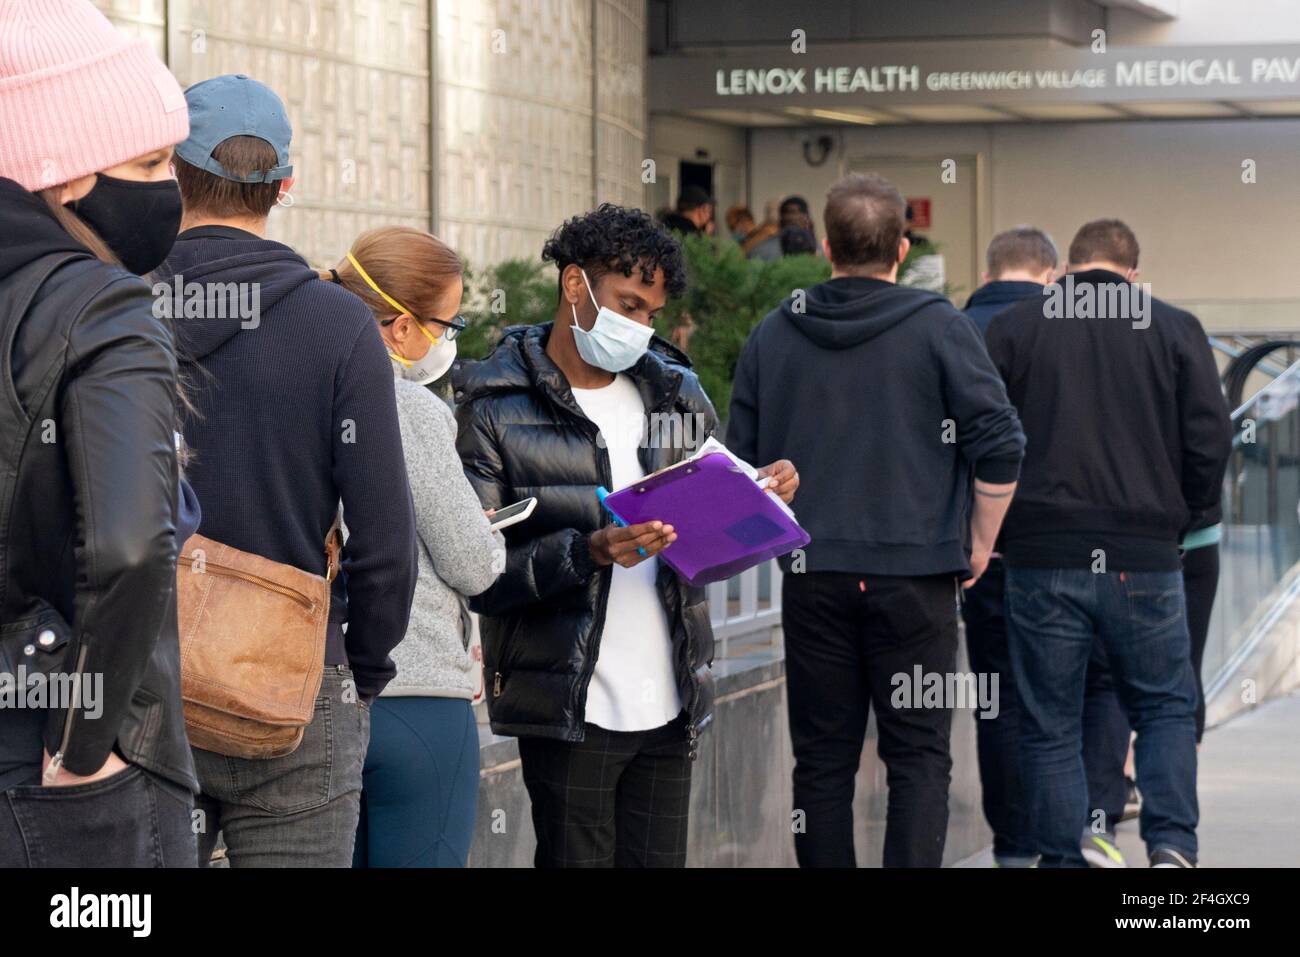 Les gens en file d'attente au Lenox Health Greenwich Village, New York City, pour une vaccination Covid-19. 20 mars 2021 Banque D'Images